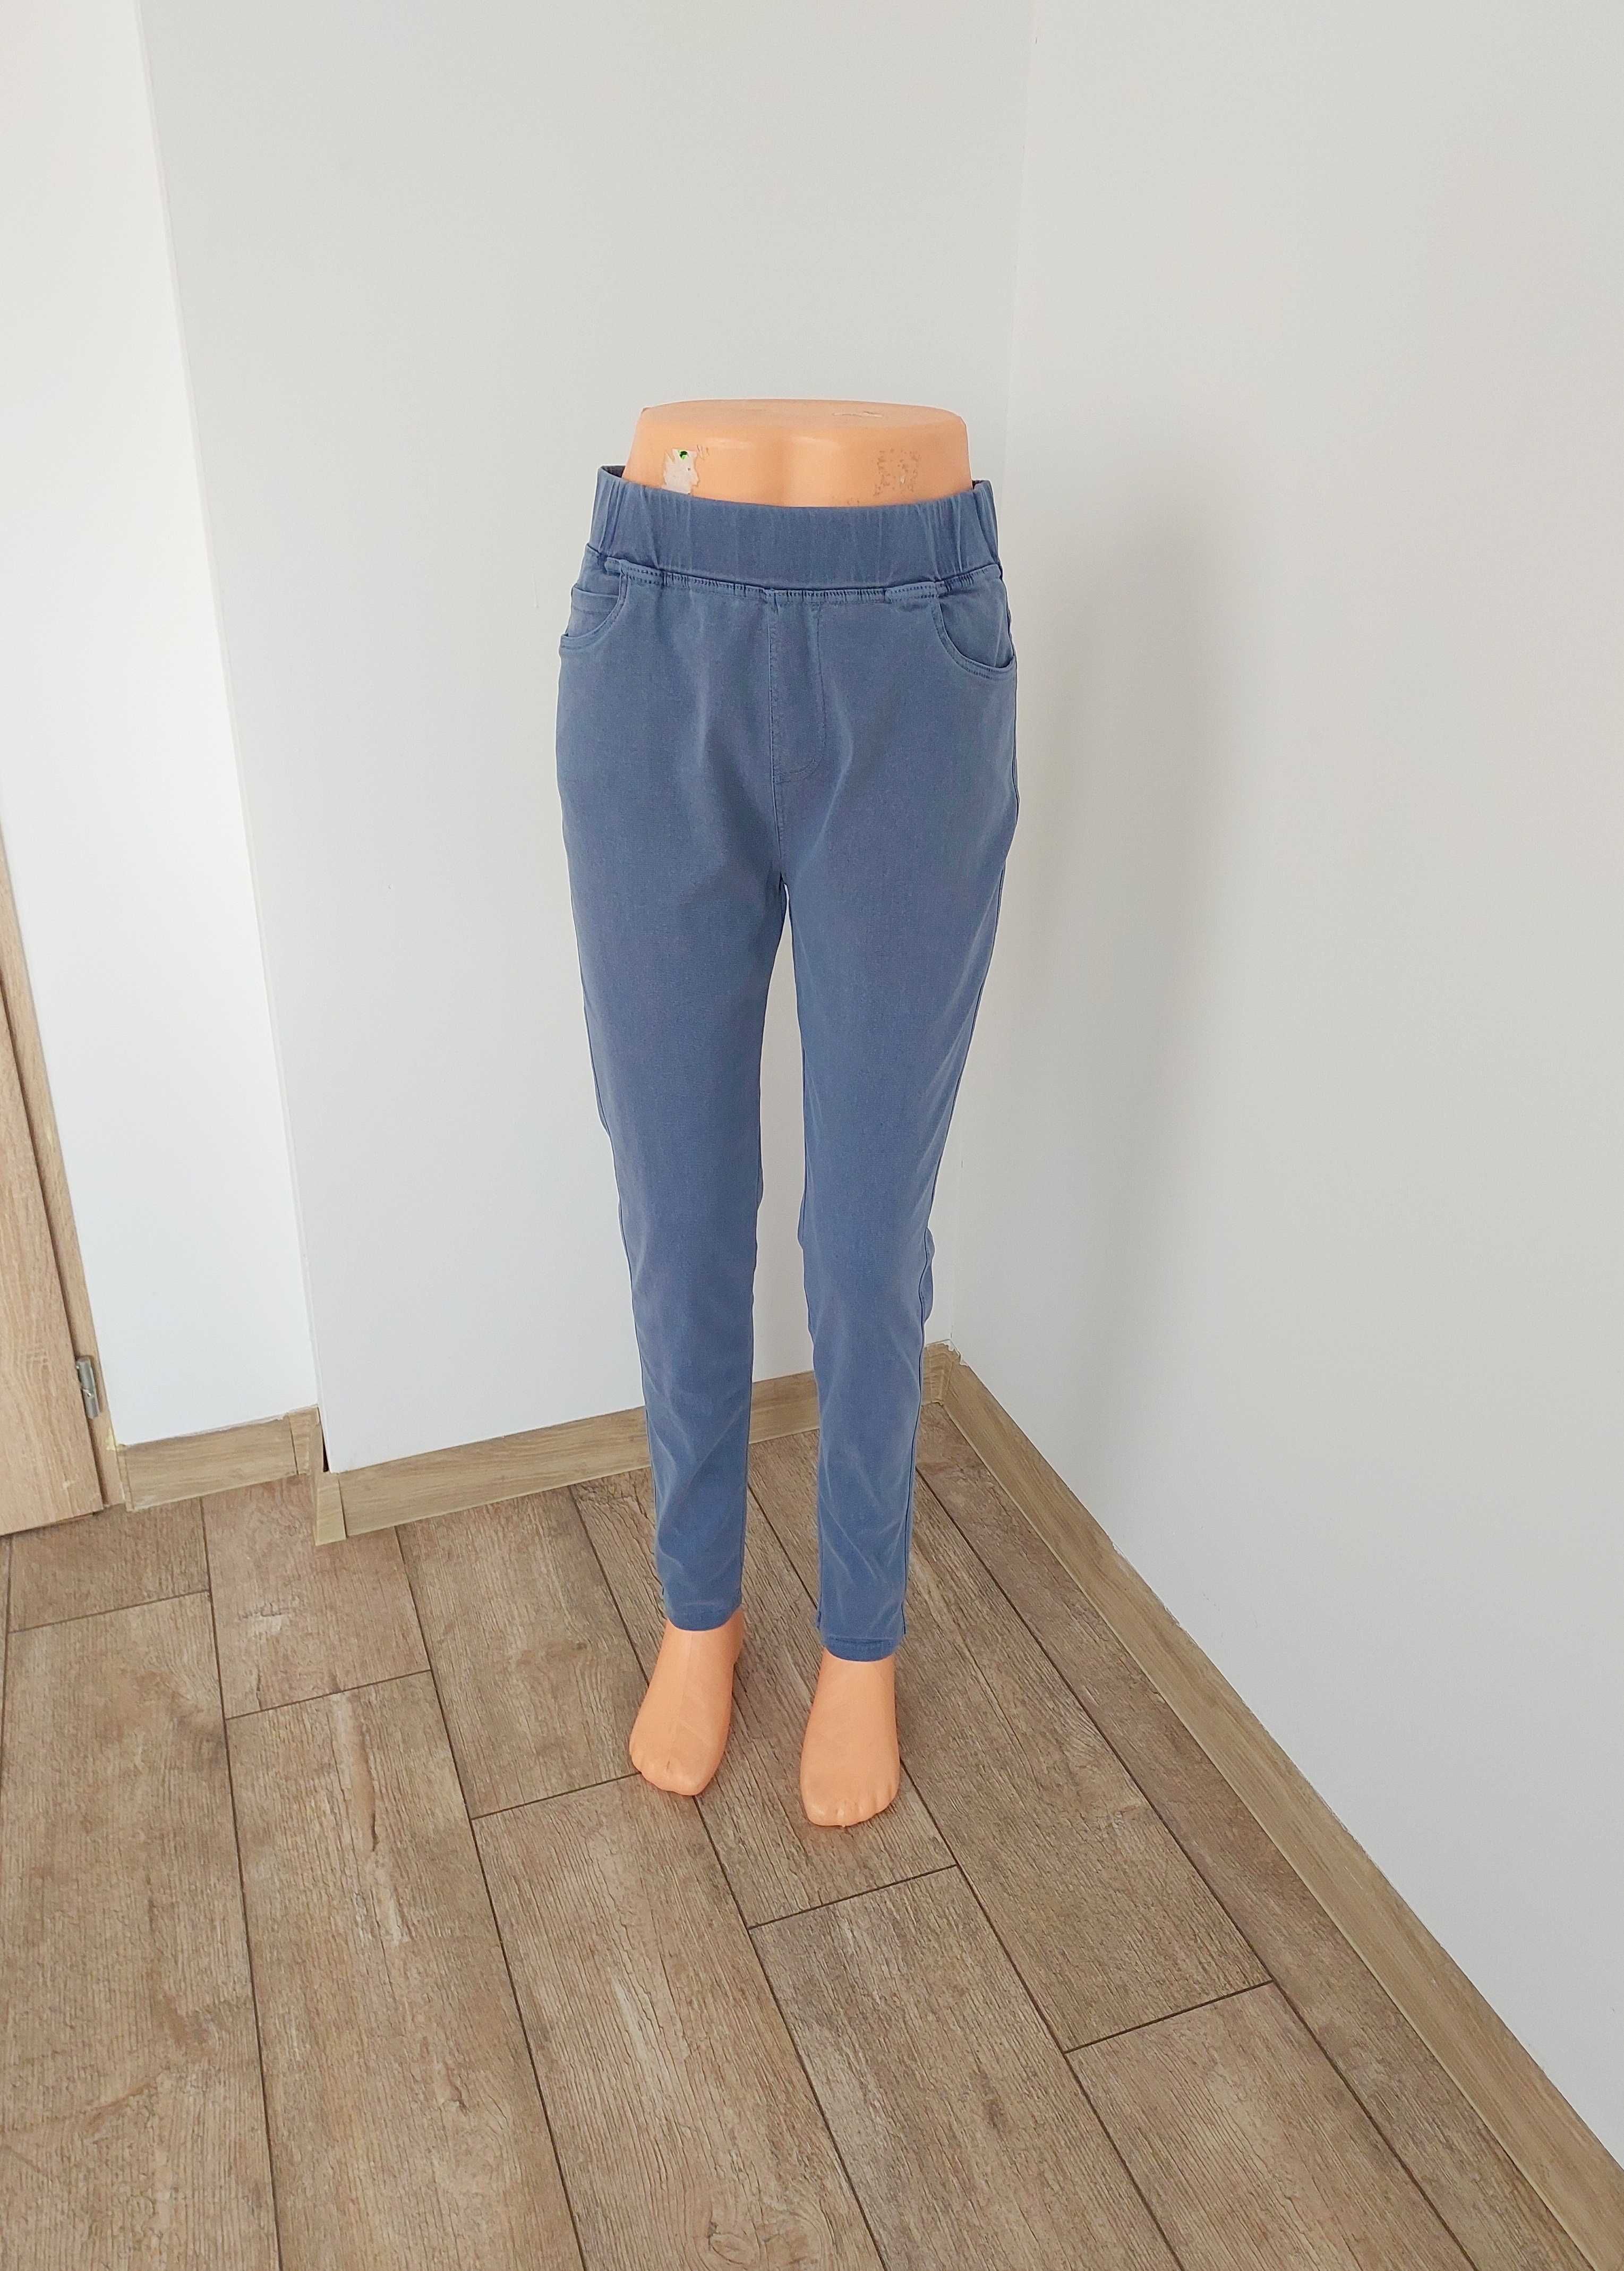 Spodnie Na Gumce Miękki Jeans Z Kieszeniami Niebieskie 6xl 52